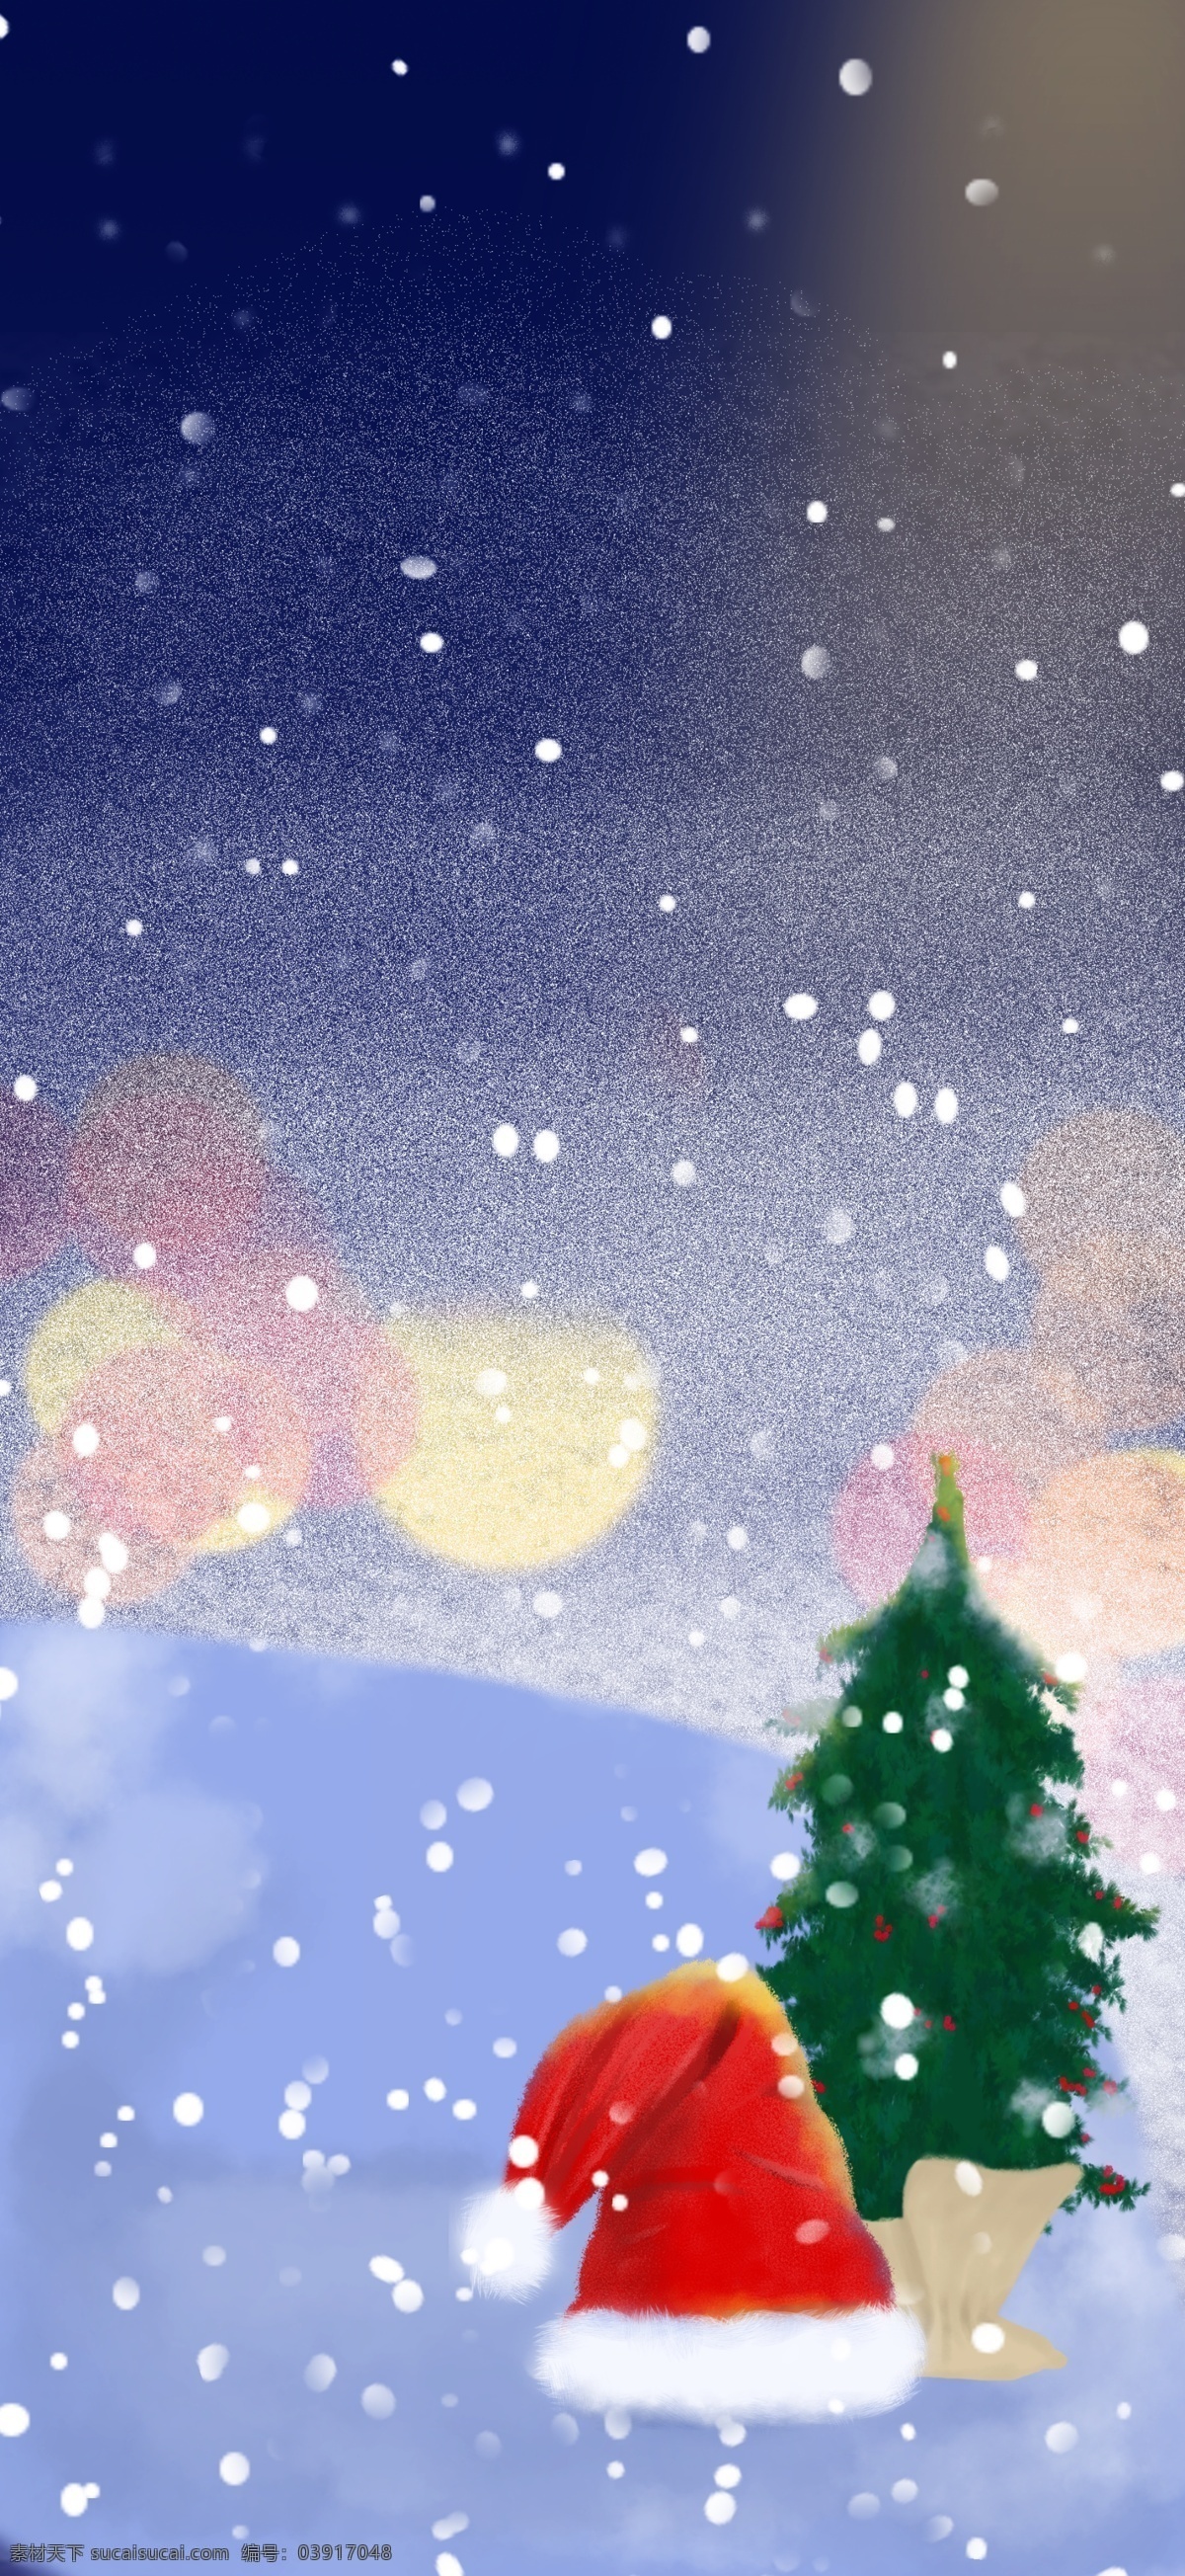 夜晚 夜景 圣诞快乐 背景 雪地 下雪 星空背景 圣诞树 圣诞节 广告背景 圣诞素材 圣诞节促销